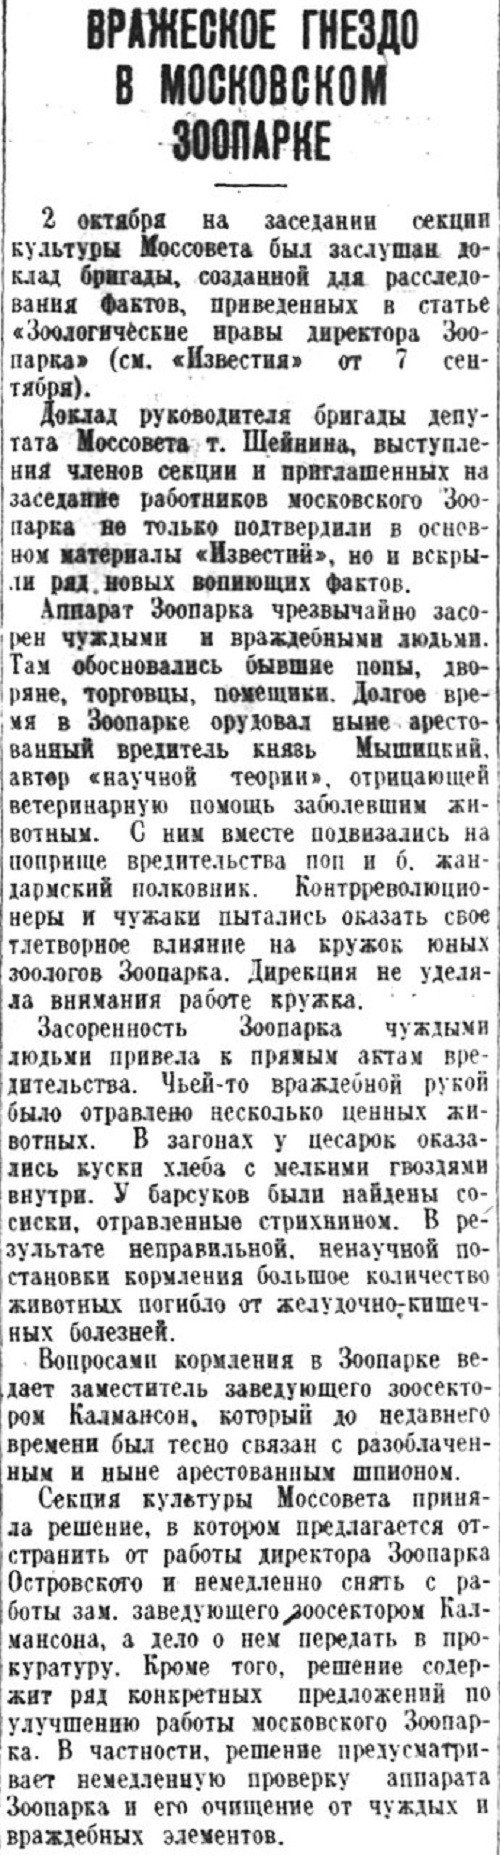 «Известия», 4 октября 1937 г.